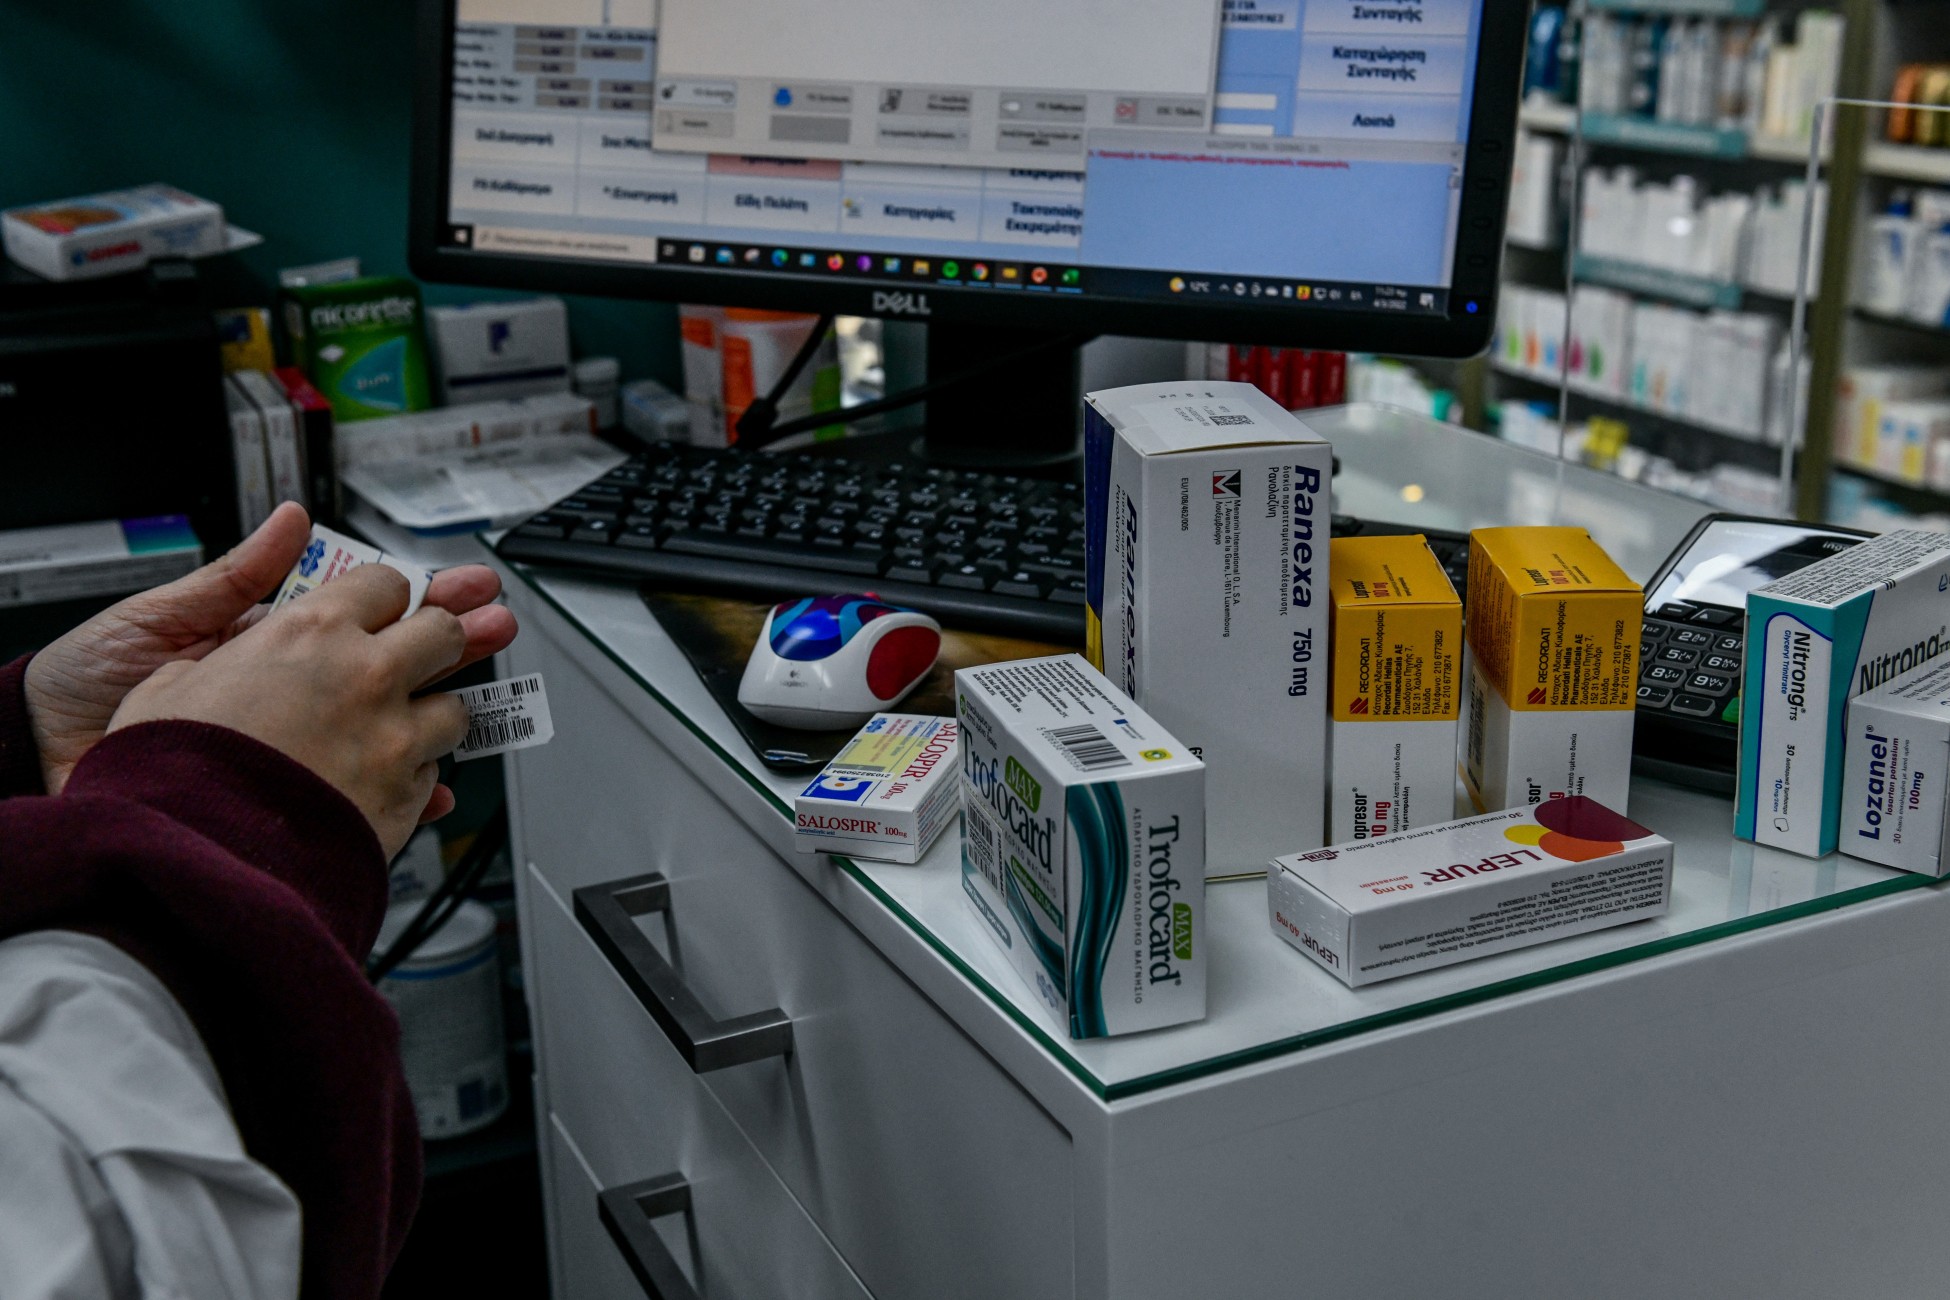 Ηλεκτρονικά φαρμακεία: Αύξηση 4% στον τζίρο – Σε ποια προϊόντα σημειώθηκαν οι υψηλότερες ανατιμήσεις (πίνακες)